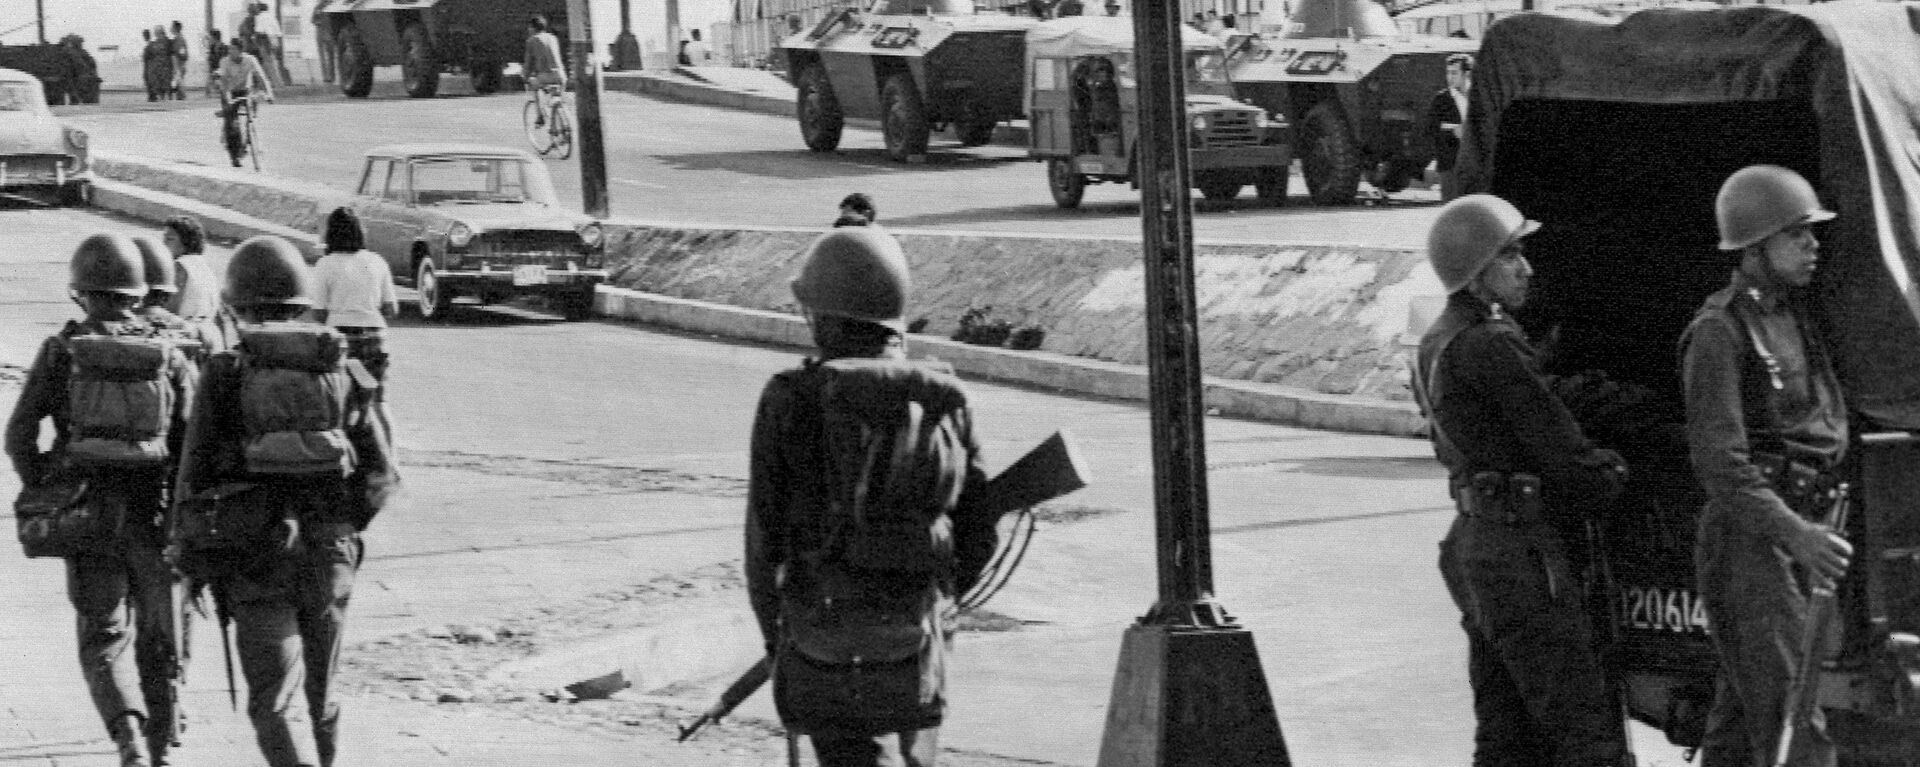 Vehículos blindados y soldados patrullan las calles de Tlatelolco, Ciudad de México, el 5 de octubre de 1968, tres días después de que el Ejército mexicano abriera fuego contra estudiantes - Sputnik Mundo, 1920, 17.08.2018